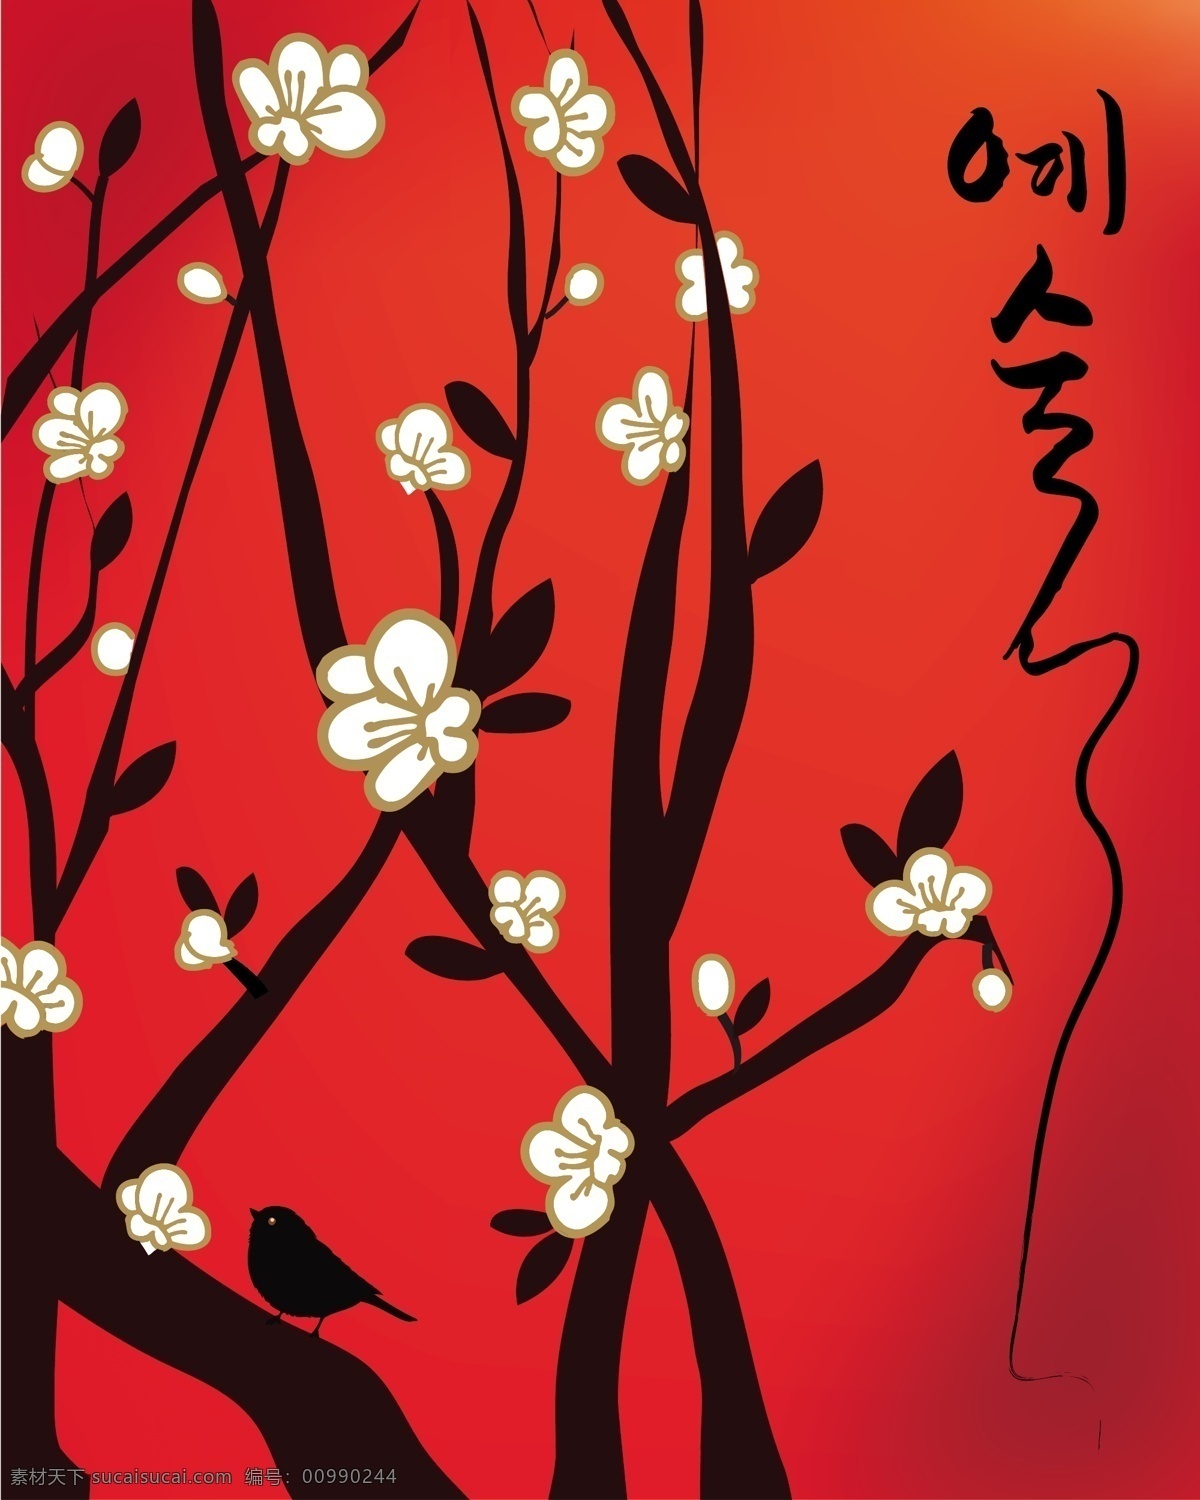 韩国 梅花 背景 花朵 剪影 梅花树 模板 设计稿 树枝 素材元素 小鸟 源文件 矢量图